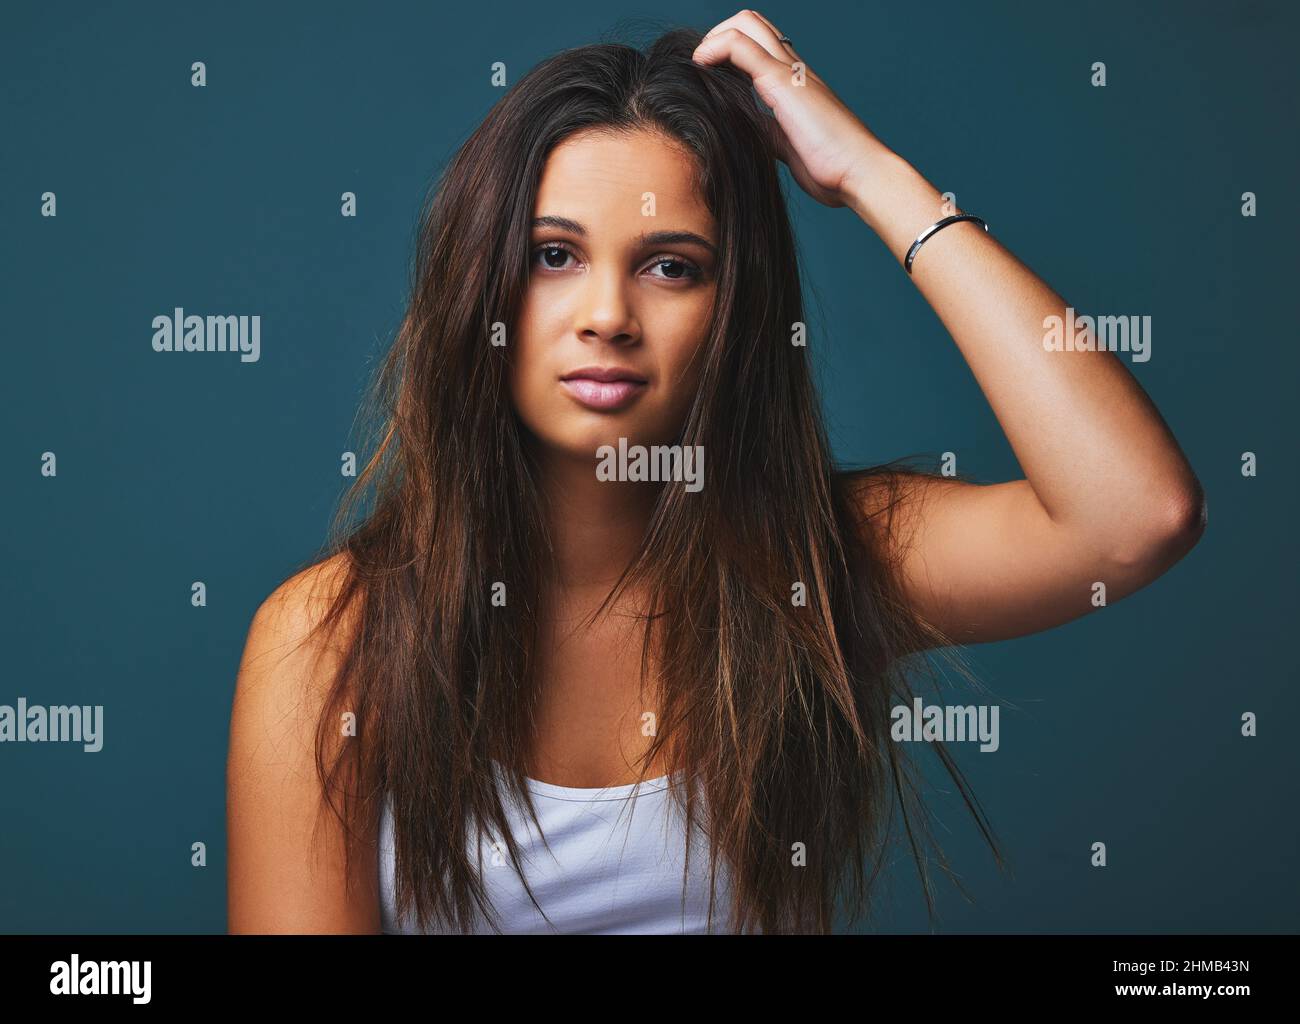 Lebenslektionen sind nur gutmütige Gesten. Porträtaufnahme einer schönen jungen Frau, die vor blauem Hintergrund posiert. Stockfoto